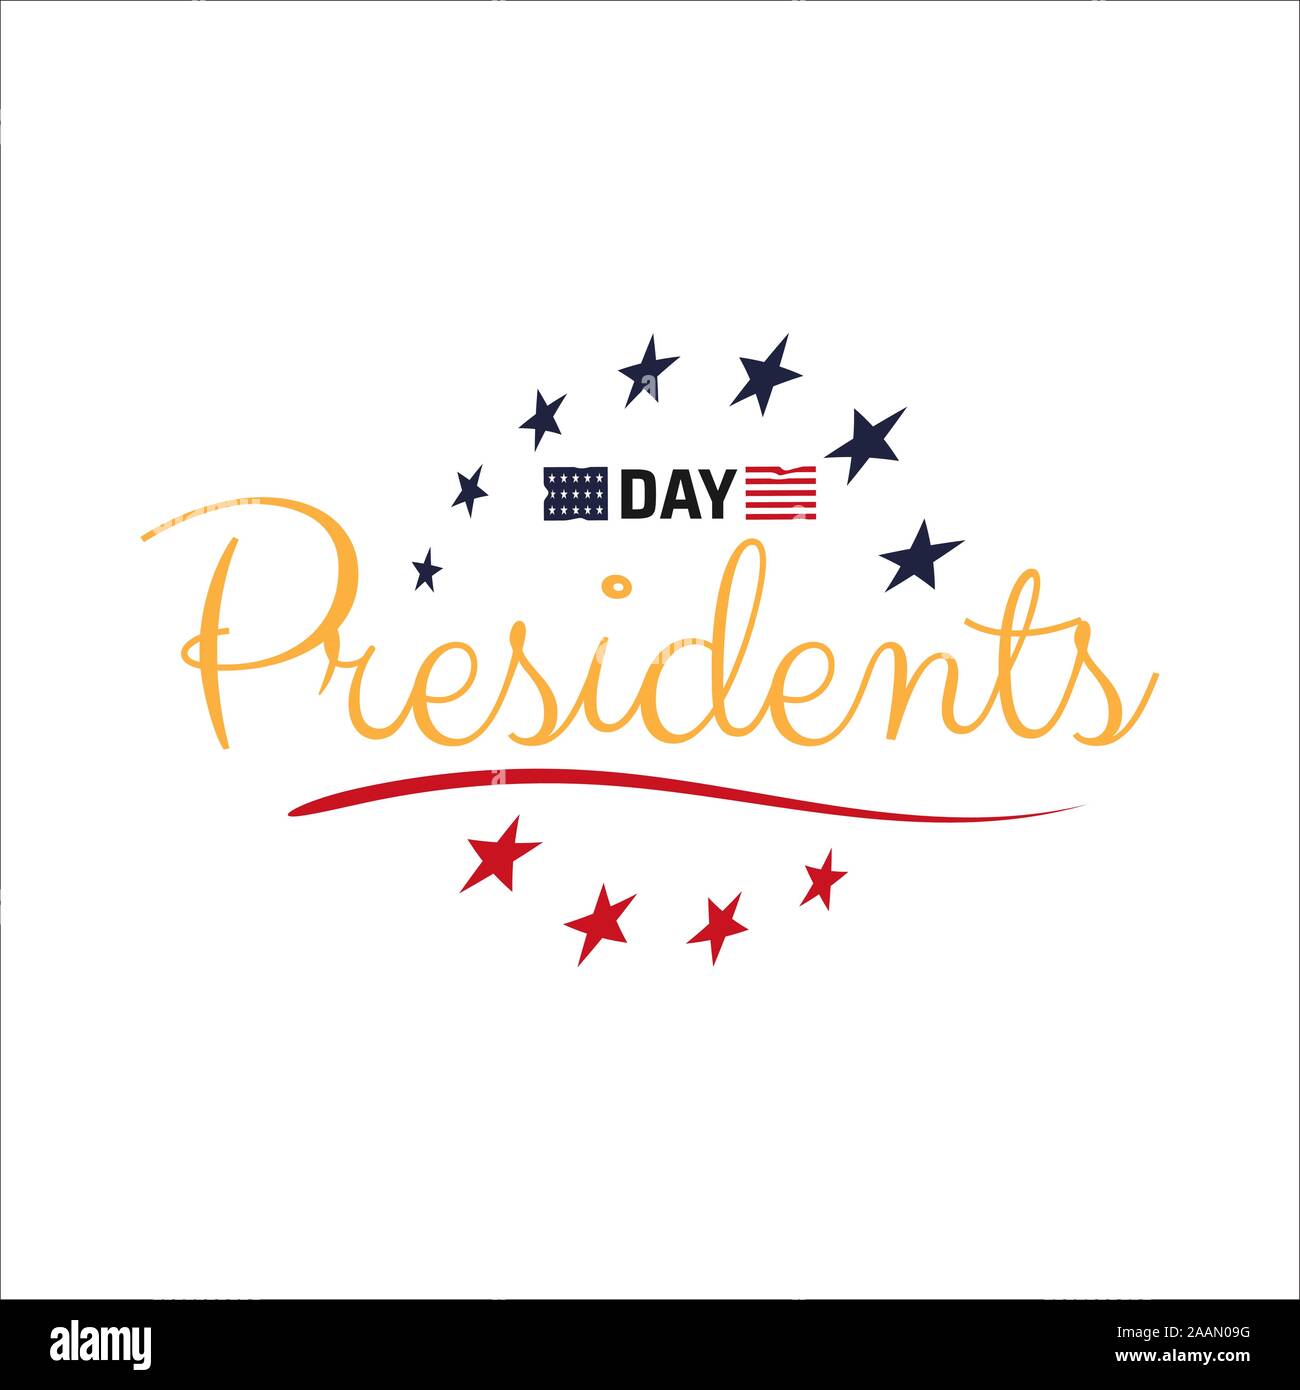 Heureux Jour Présidents Présidents texte lettrage de jour en USA vector illustration graphic design. Nous Président célébration des tracés à main levée calligraphique Illustration de Vecteur